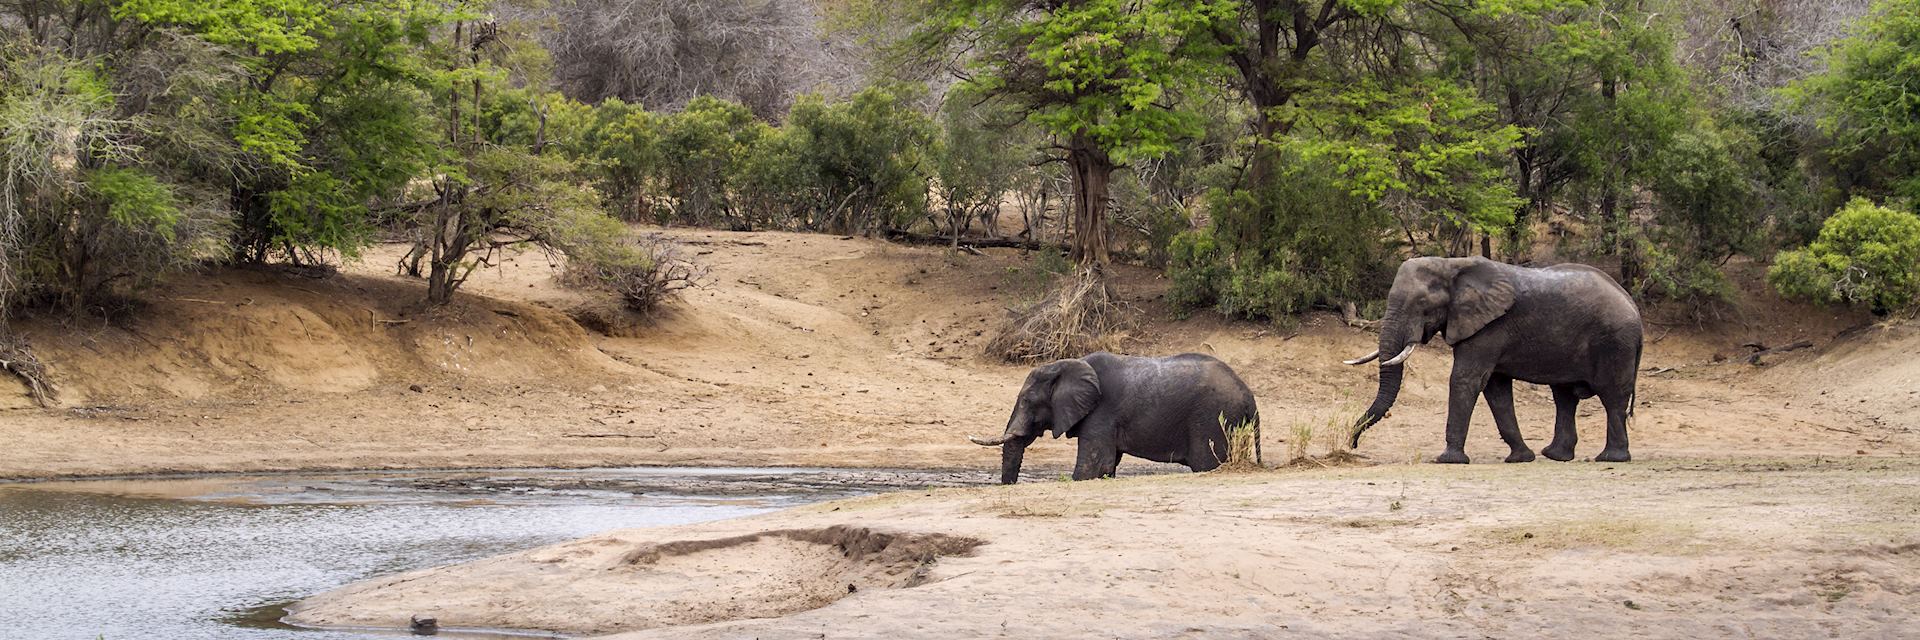 Elephants in Kruger National Park 